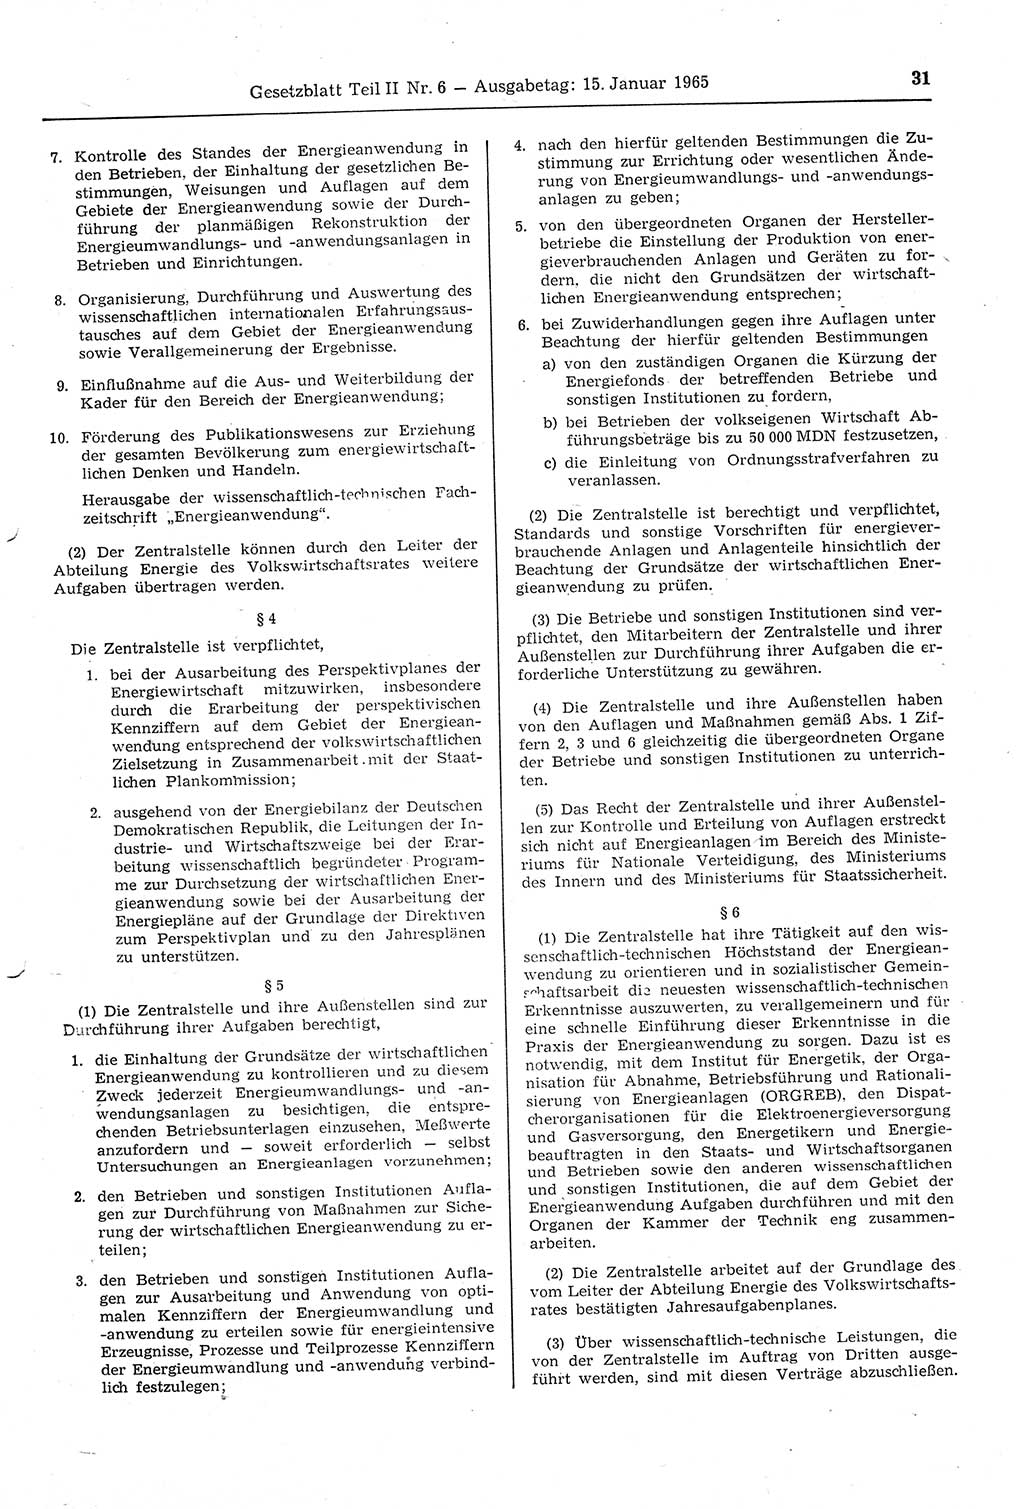 Gesetzblatt (GBl.) der Deutschen Demokratischen Republik (DDR) Teil ⅠⅠ 1965, Seite 31 (GBl. DDR ⅠⅠ 1965, S. 31)